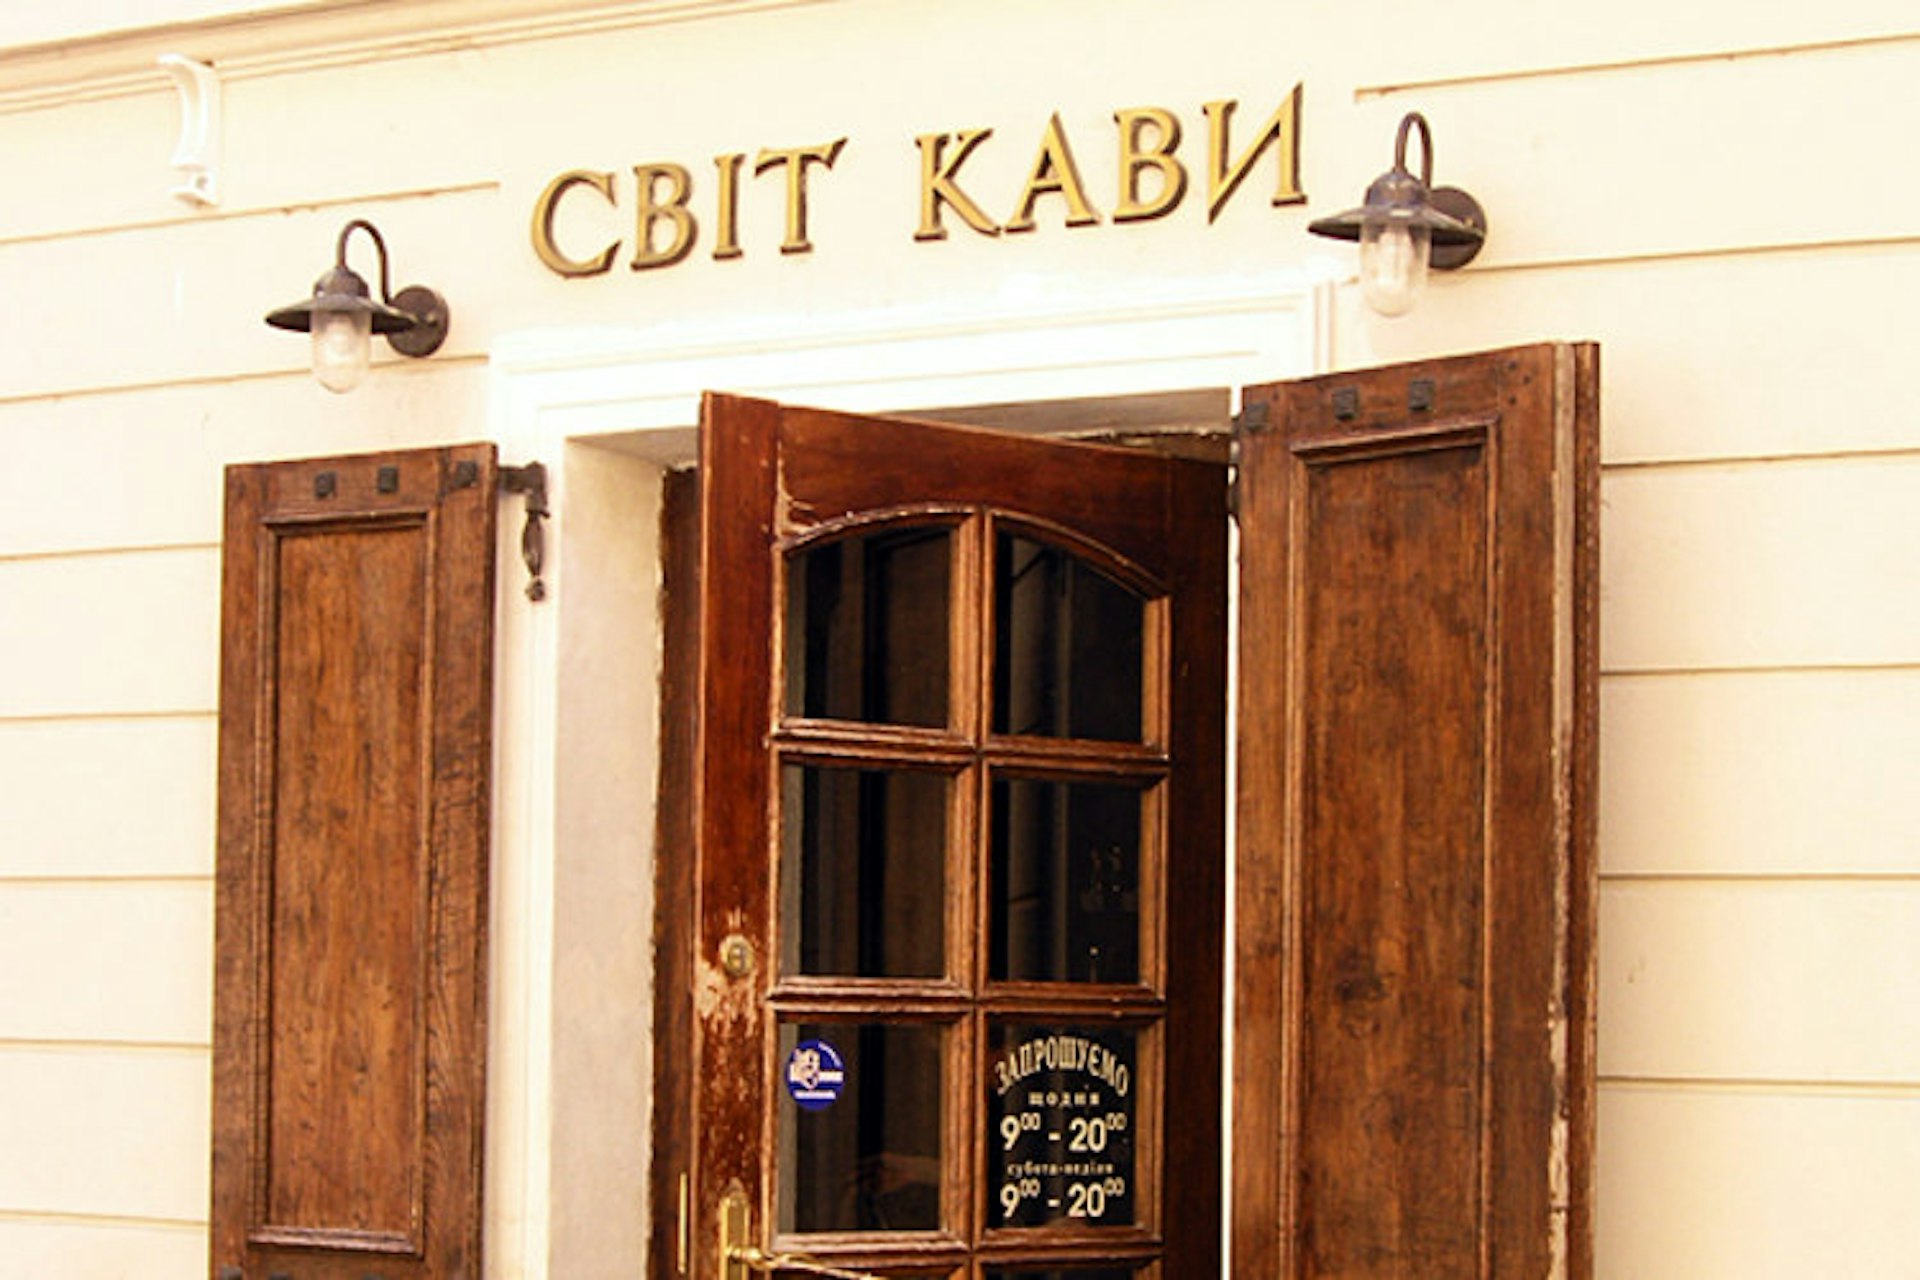 Svit Kavy cafe, Lviv. Image by Elena Pleskevich / CC BY-SA 2.0